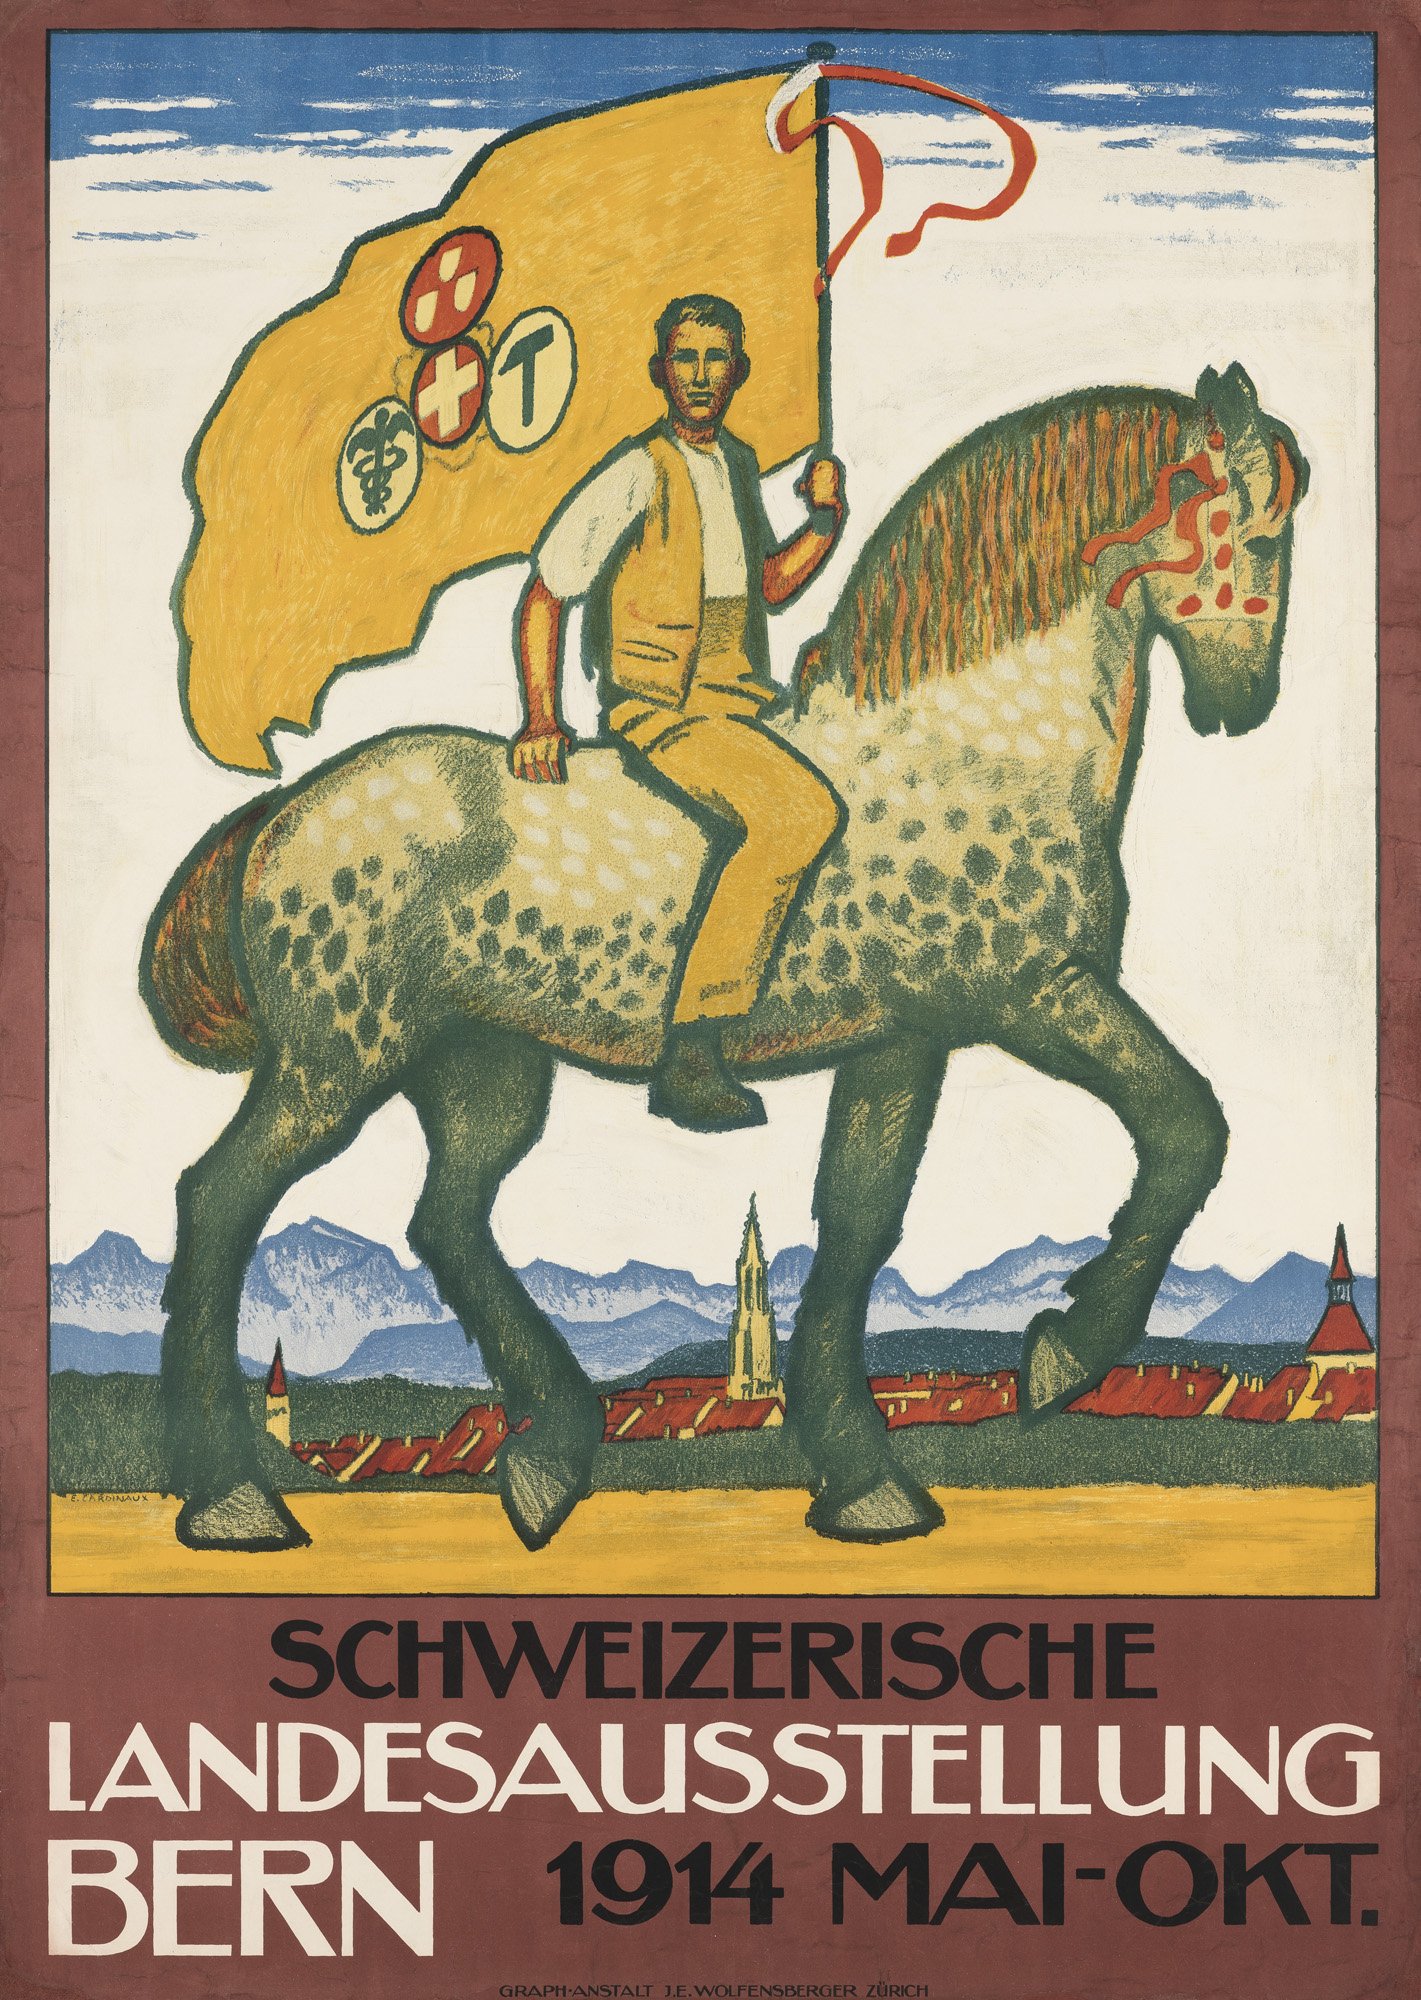 Emil Cardinaux, Schweizerische Landesausstellung Bern, Plakat, 1914, Lithografie, Museum für Gestaltung Zürich, Plakatsammlung